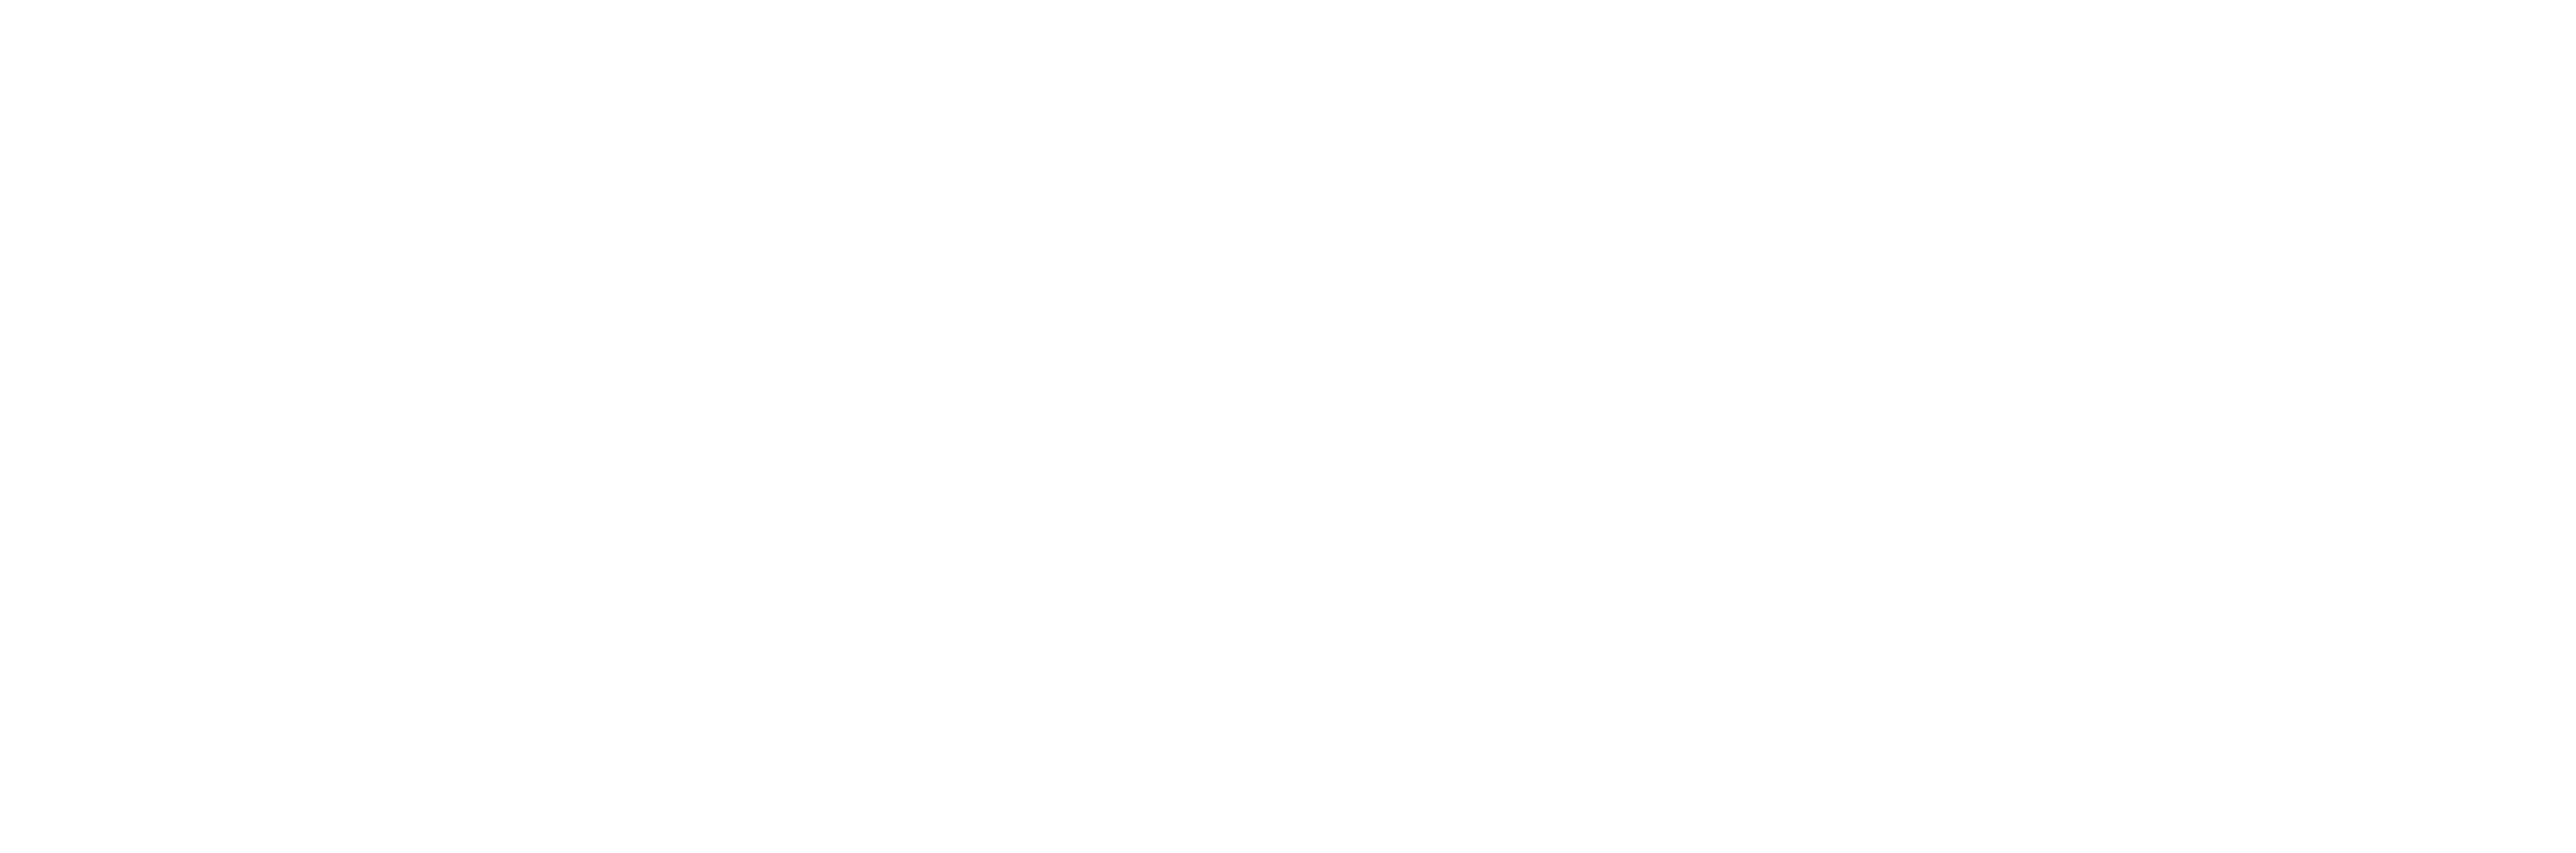 Logo Libération